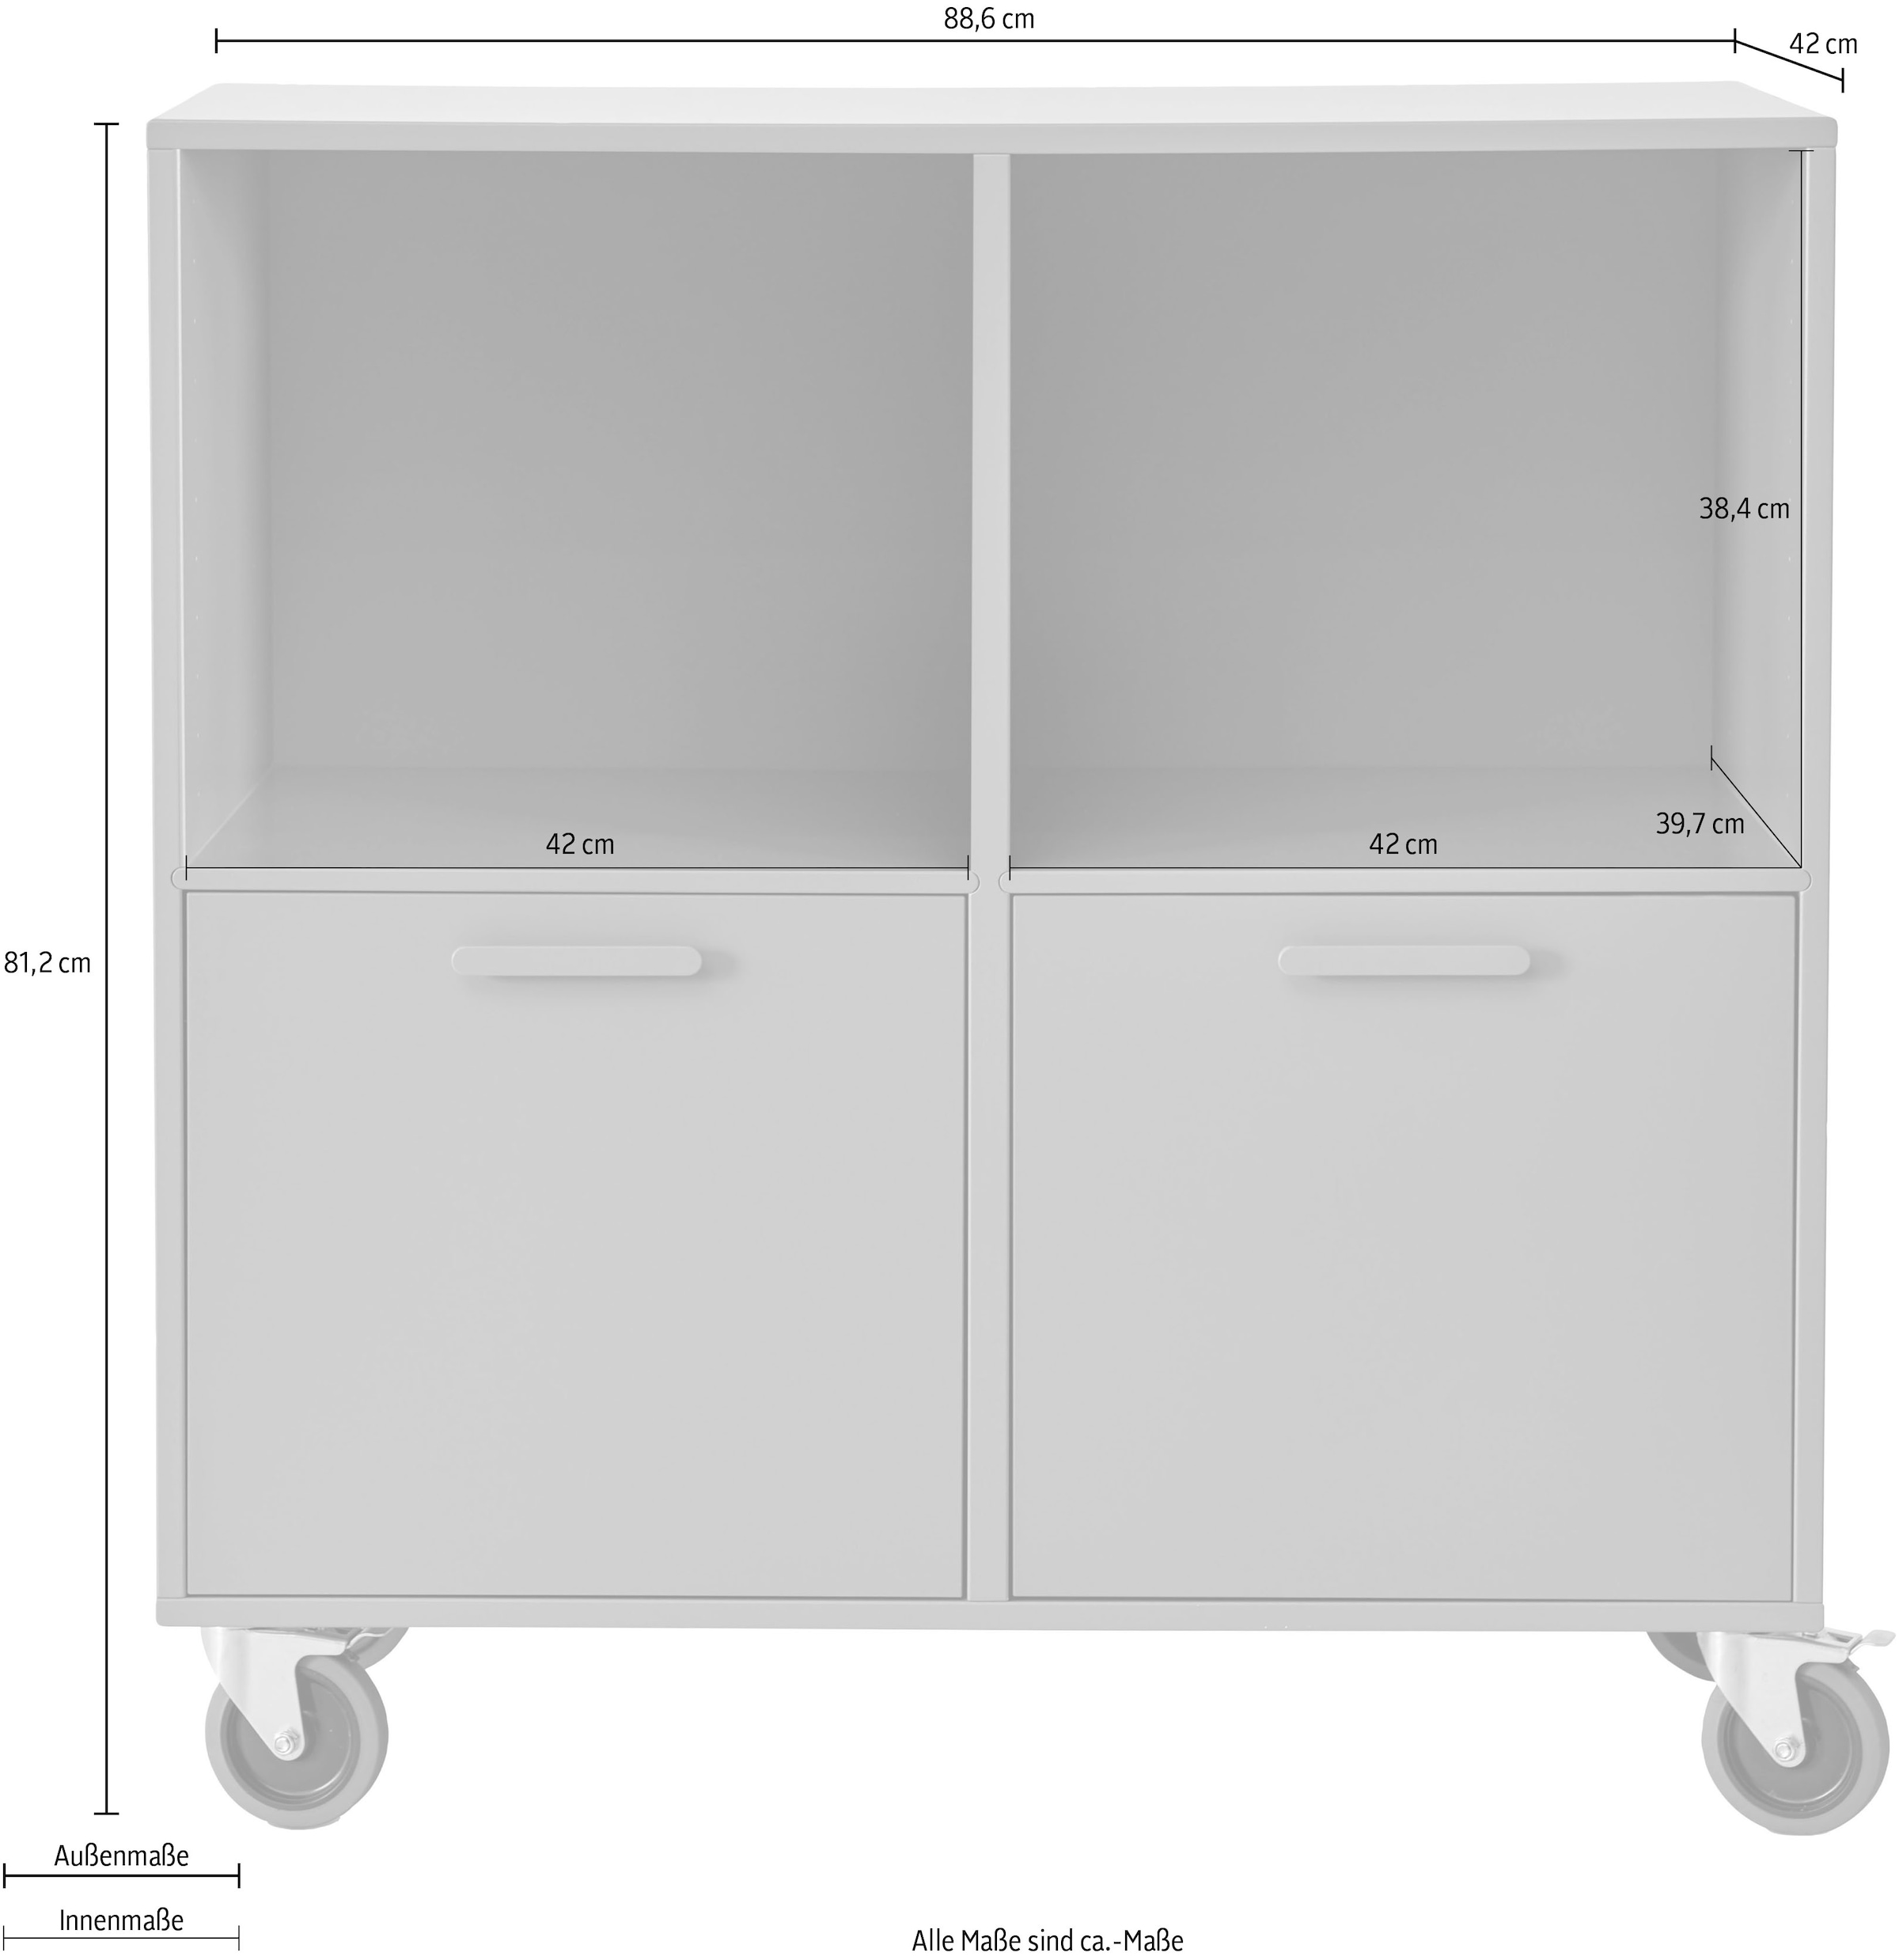 Hammel Furniture Türen bestellen und »Keep cm, | 2 flexible Hammel«, Regal BAUR Breite mit Möbelserie Rollen, 88,6 by